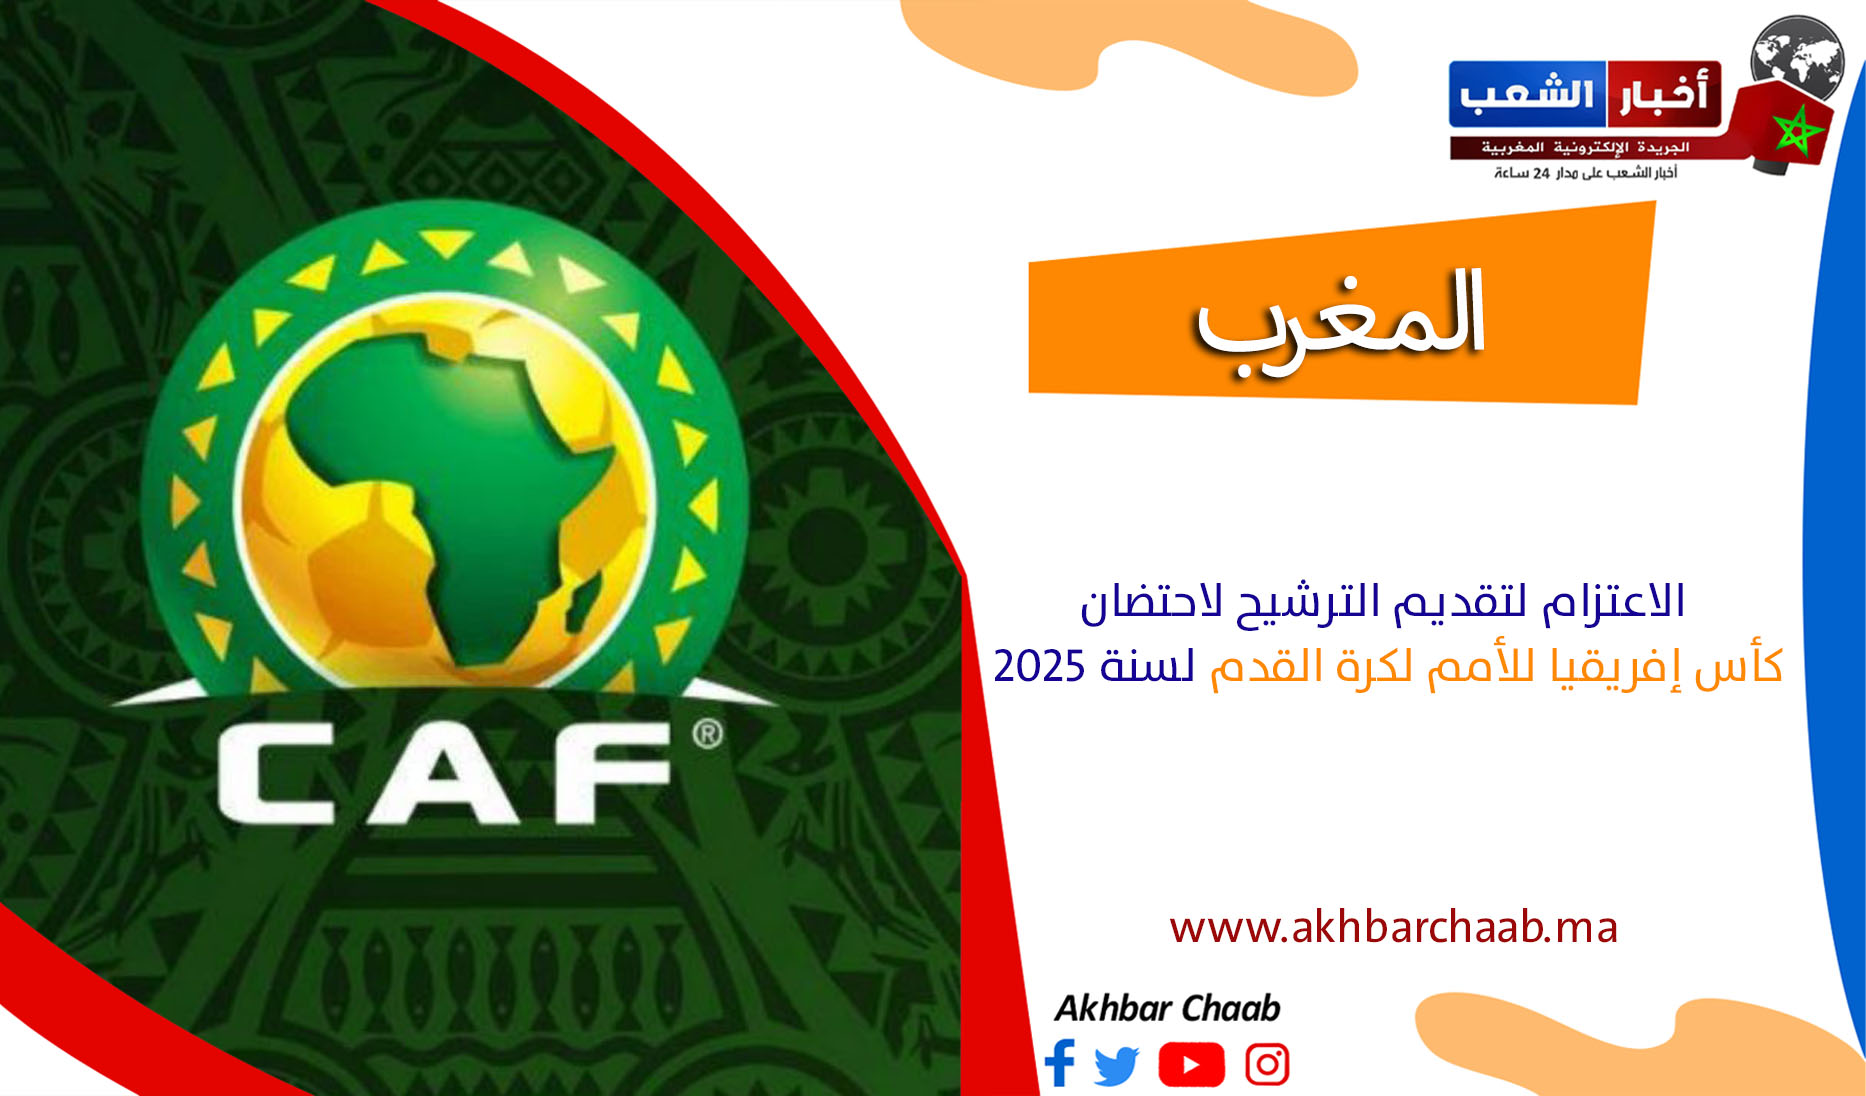 المغرب .. تقديم الترشيح لاحتضان كأس إفريقيا للأمم لكرة القدم لسنة 2025